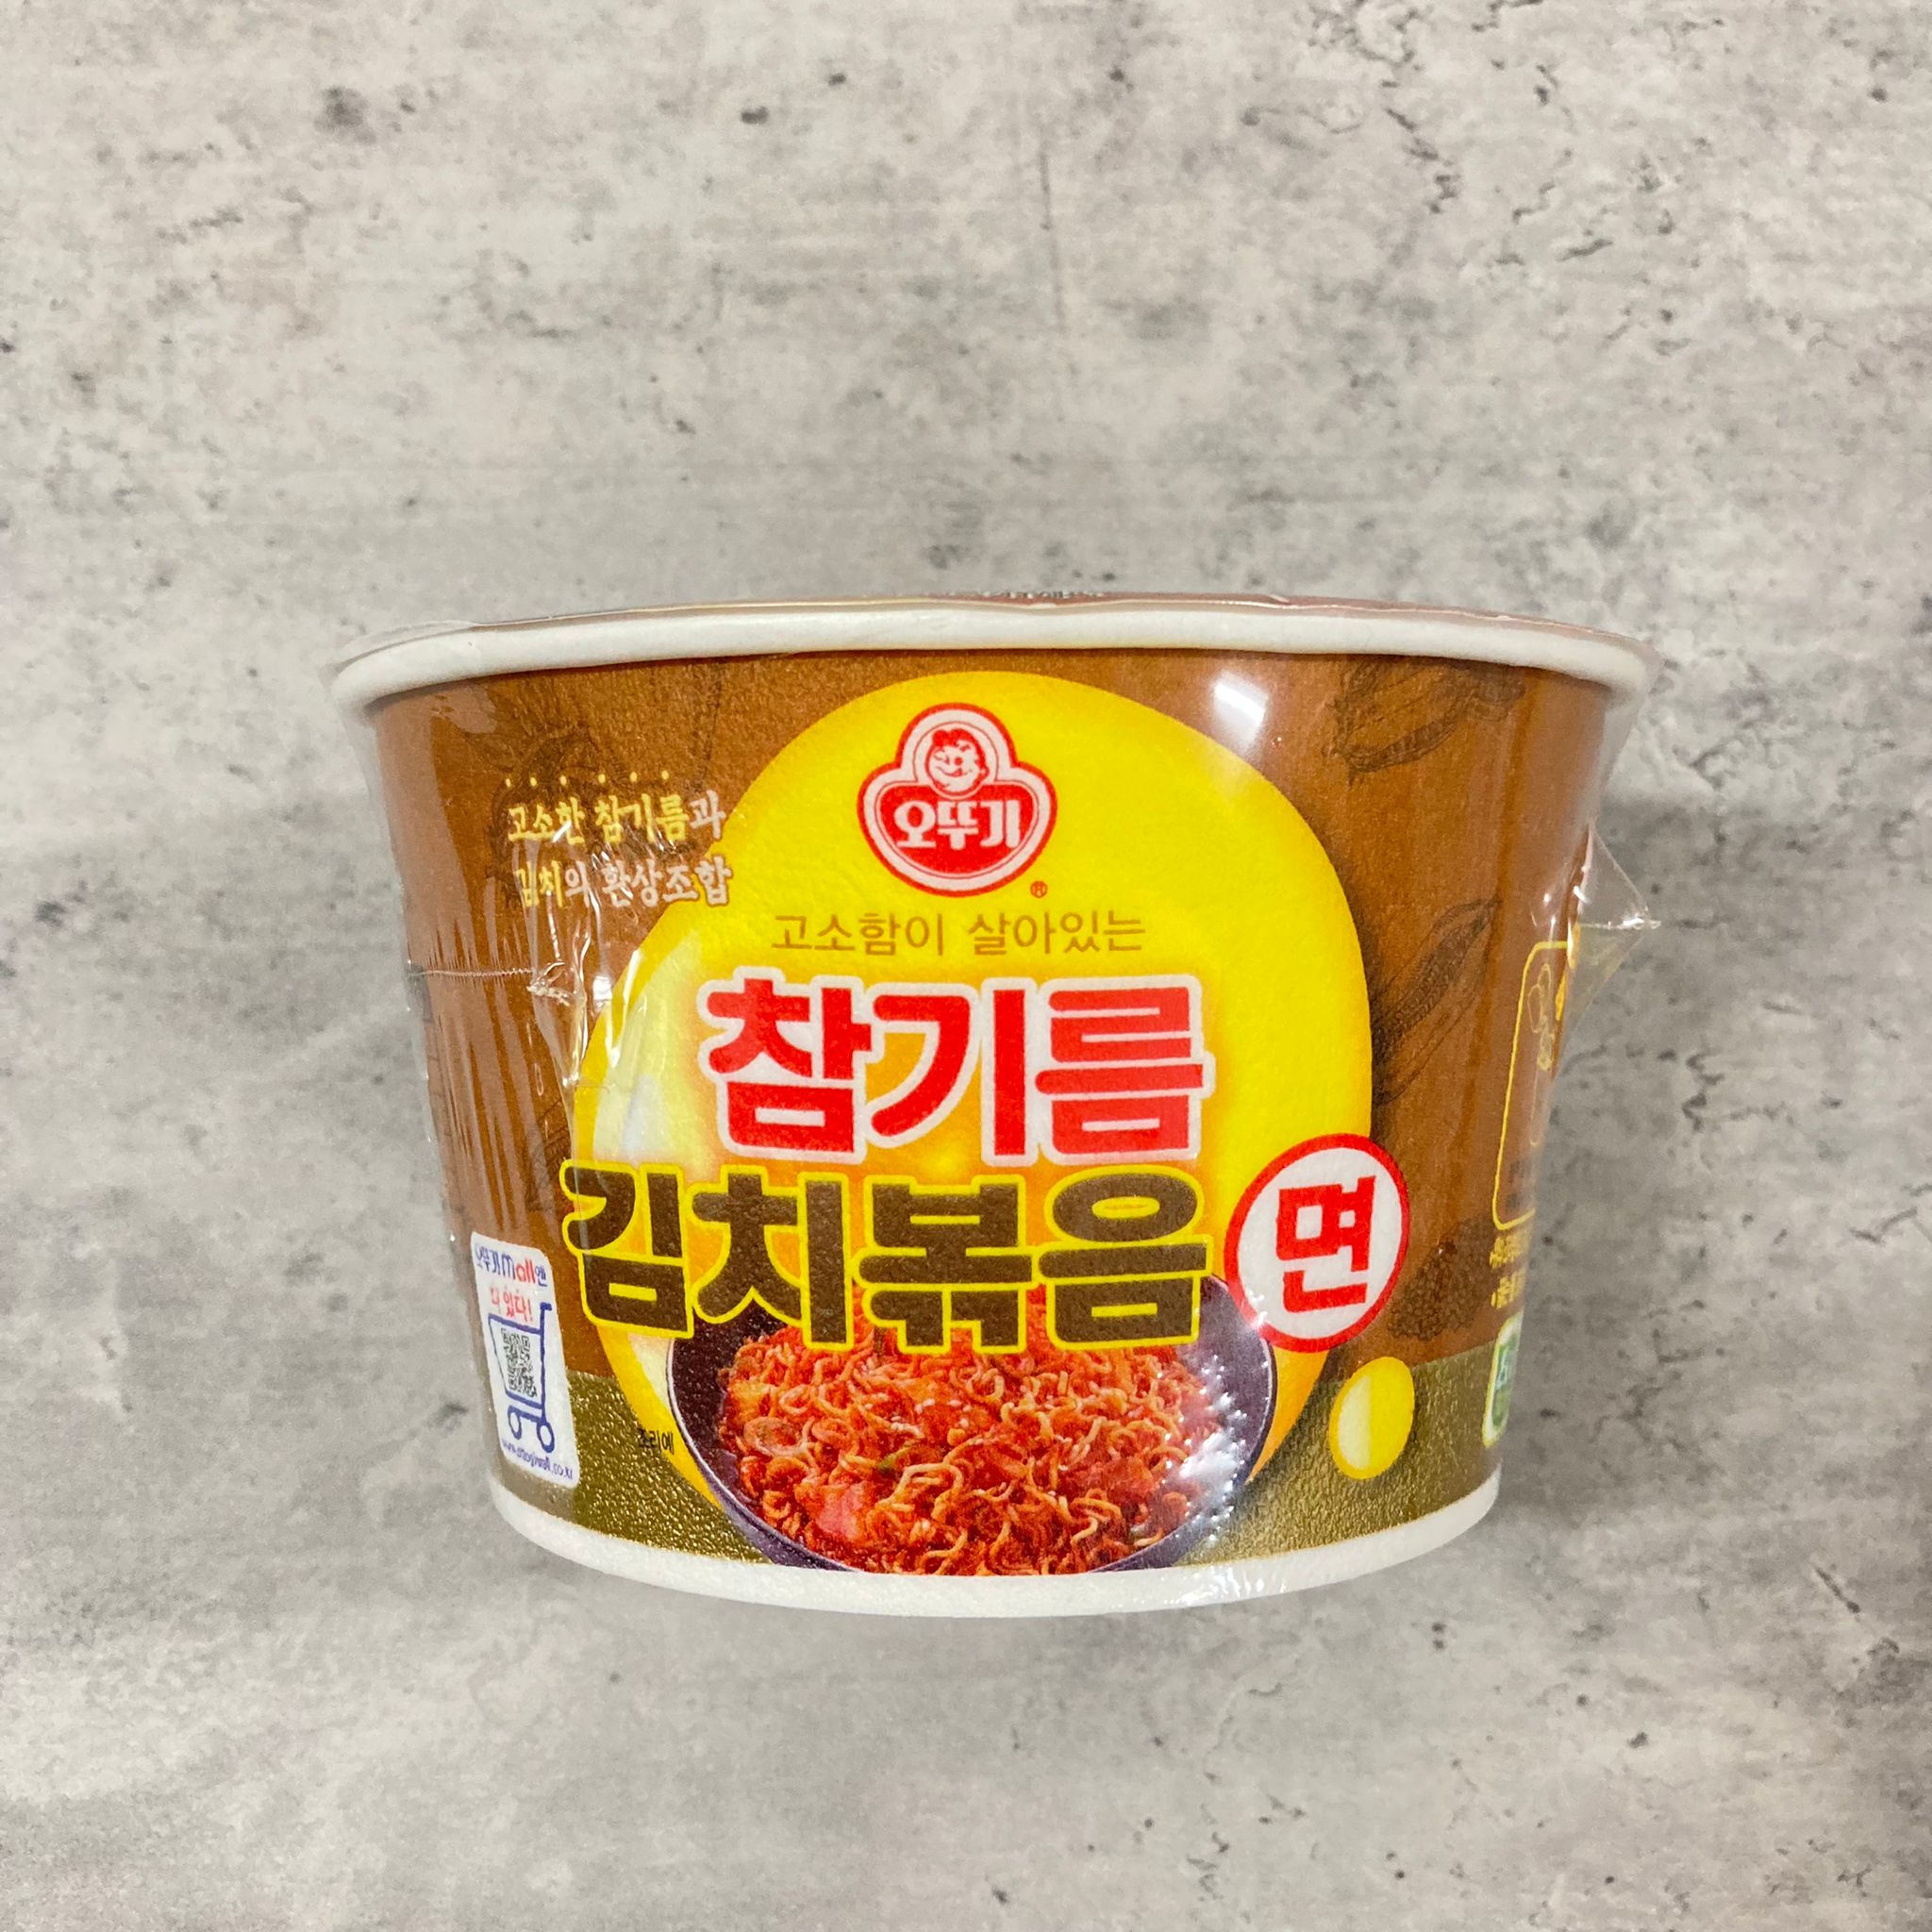 韓國食品-[오뚜기] 참기름 김치볶음면 120g